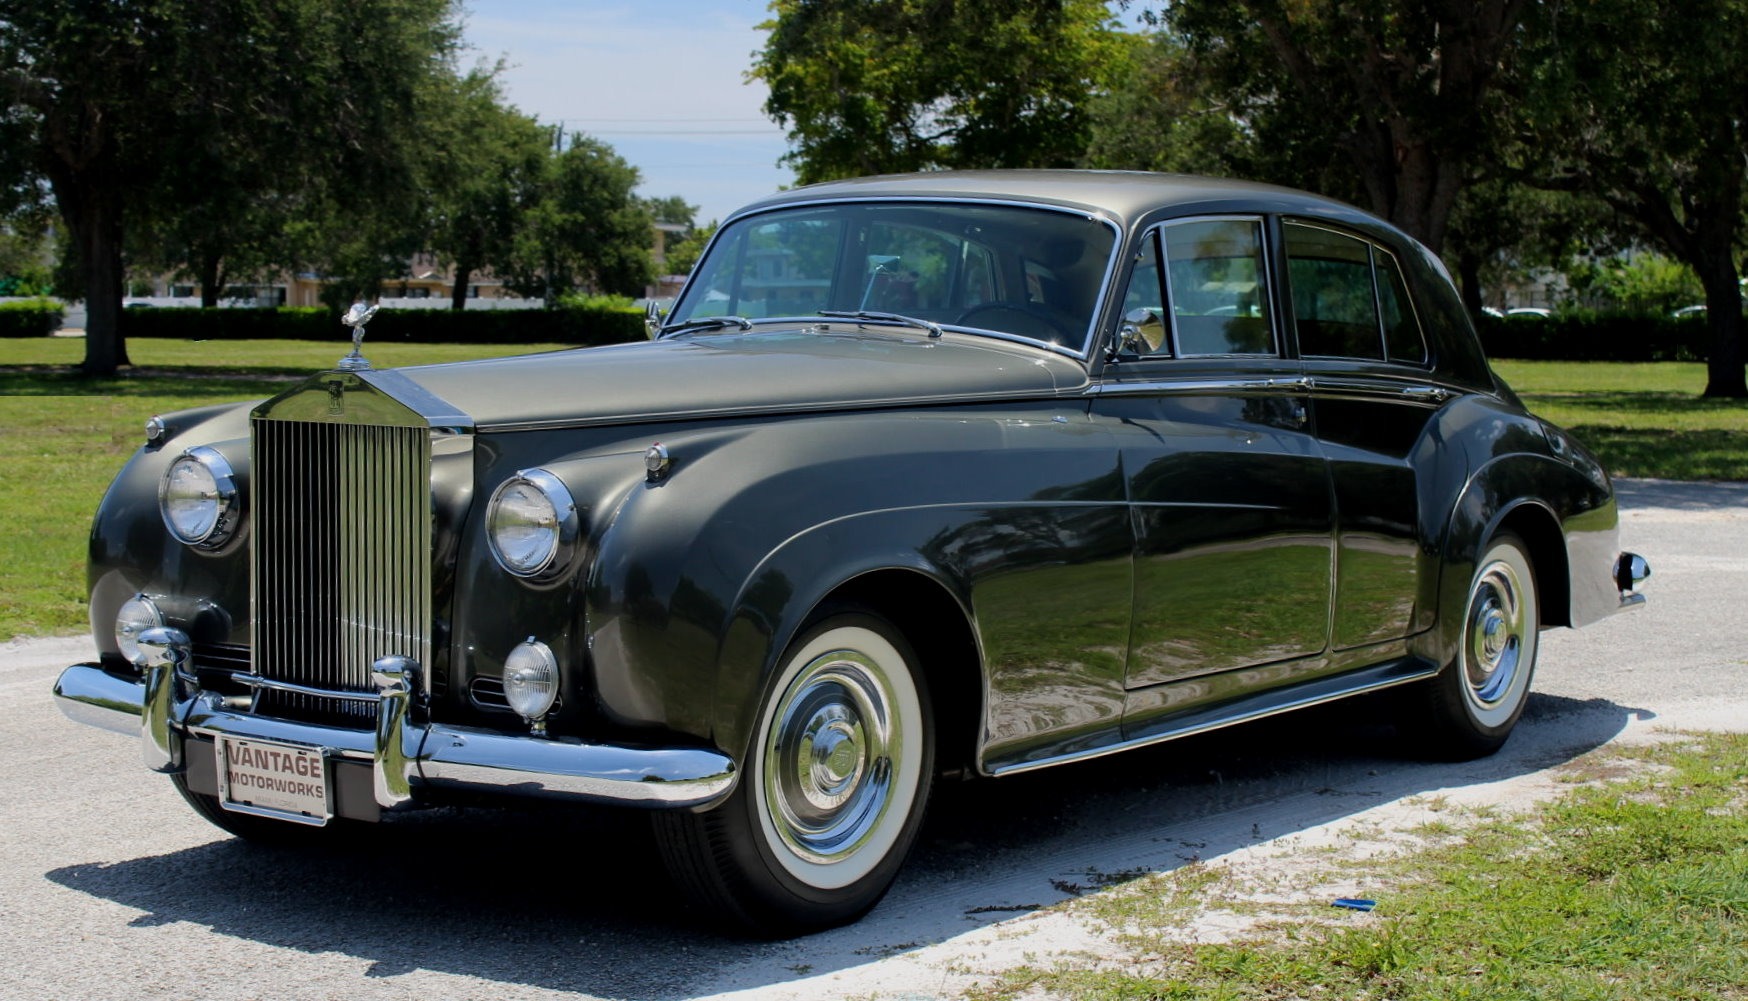 https://www.vantagemotorworks.com/imagetag/12612/main/l/Used-1962-Rolls-Royce-Silver-Cloud-II-Standard-Sedan.jpg